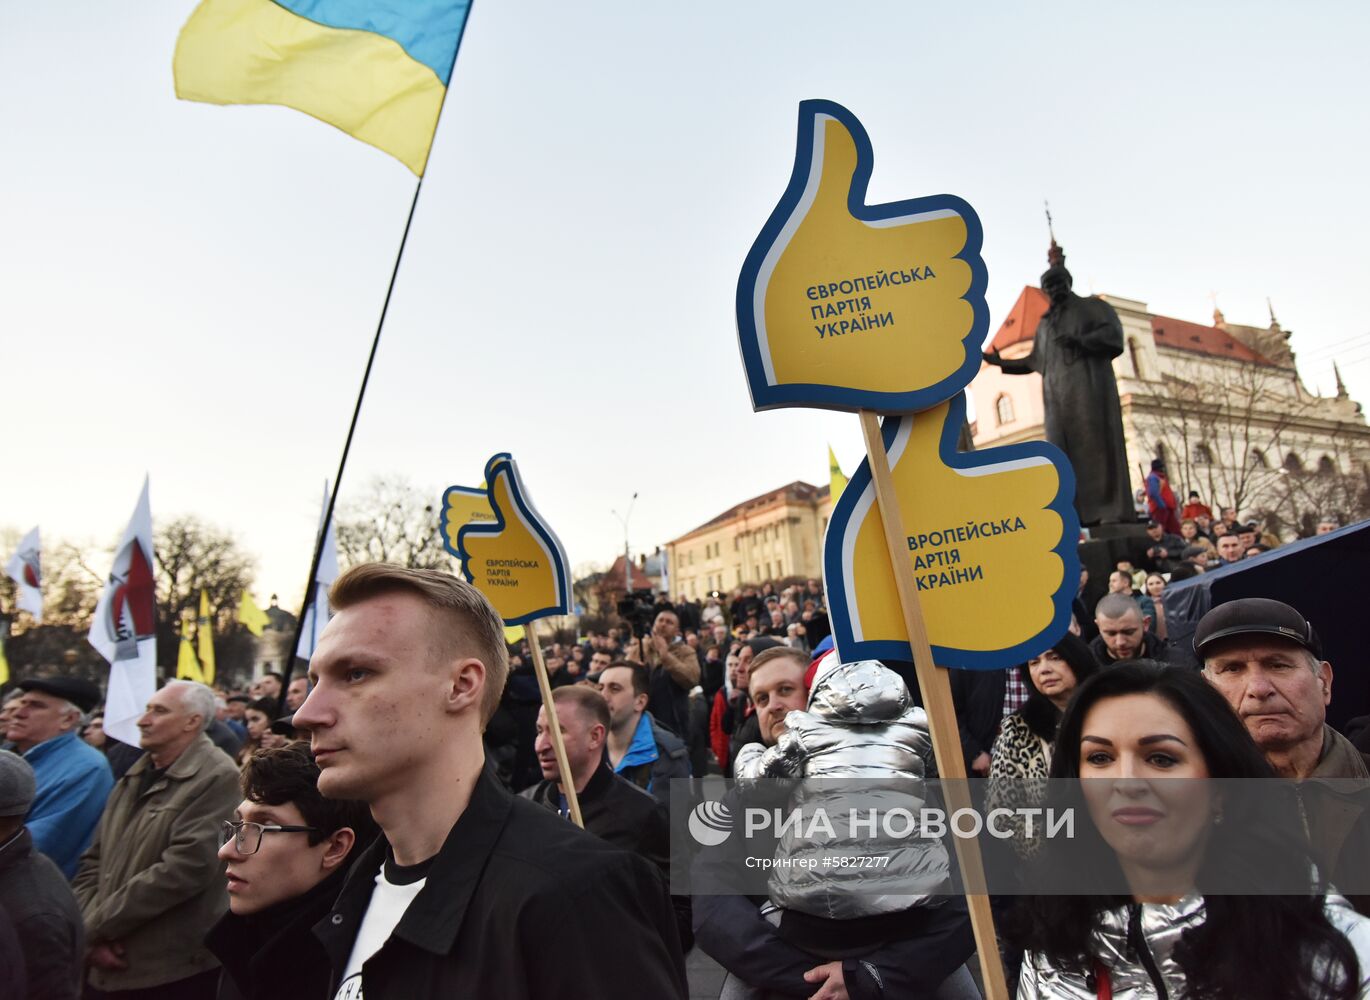 Митинг в поддержку кандидата в президенты Украины А. Гриценко